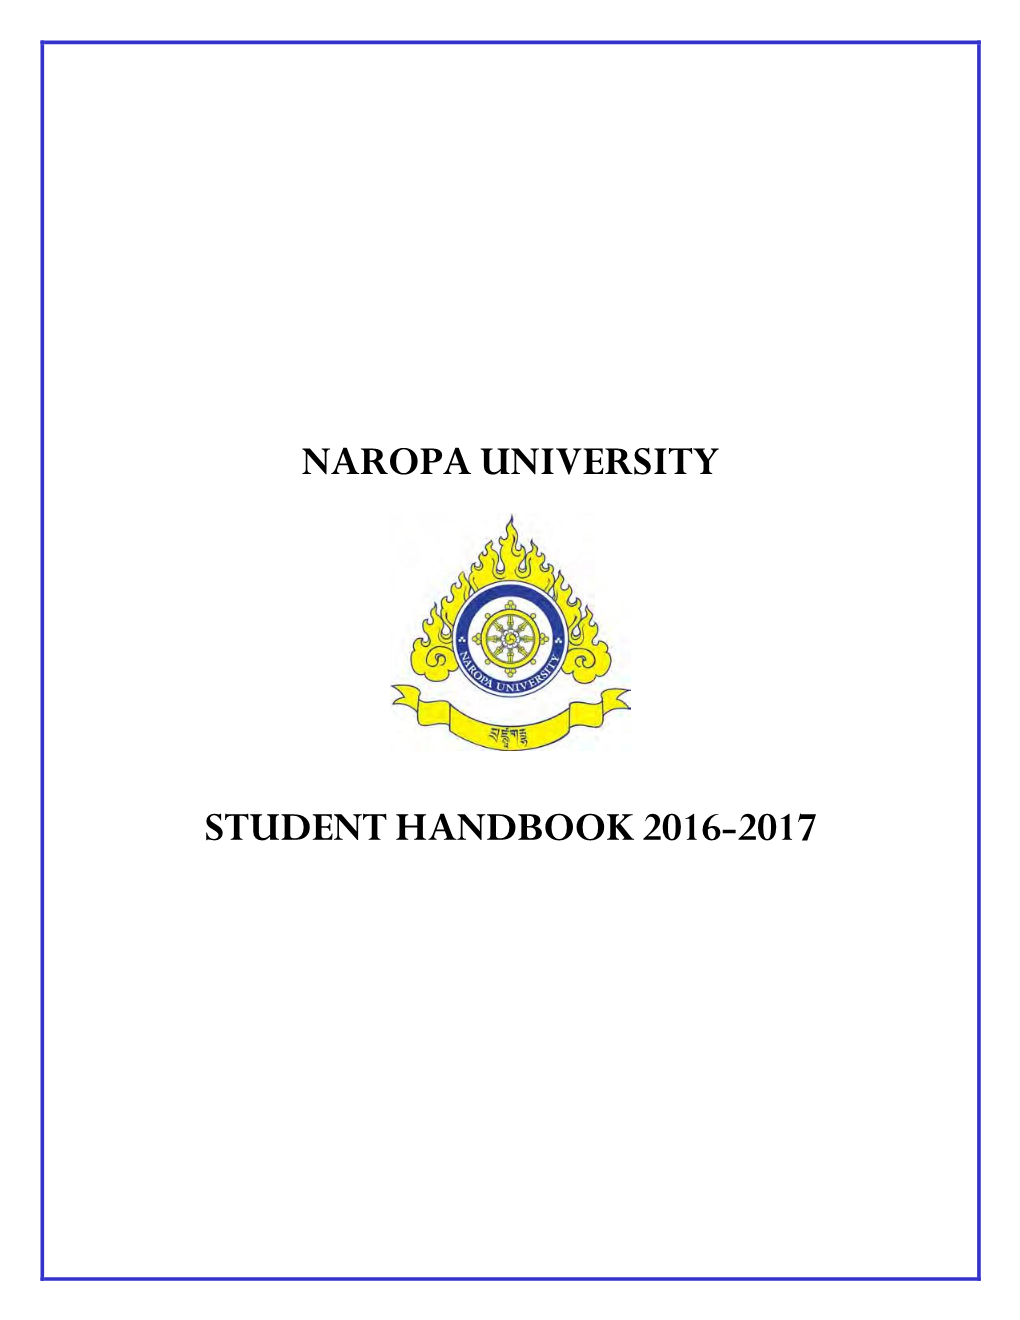 Student Handbook 2016-2017